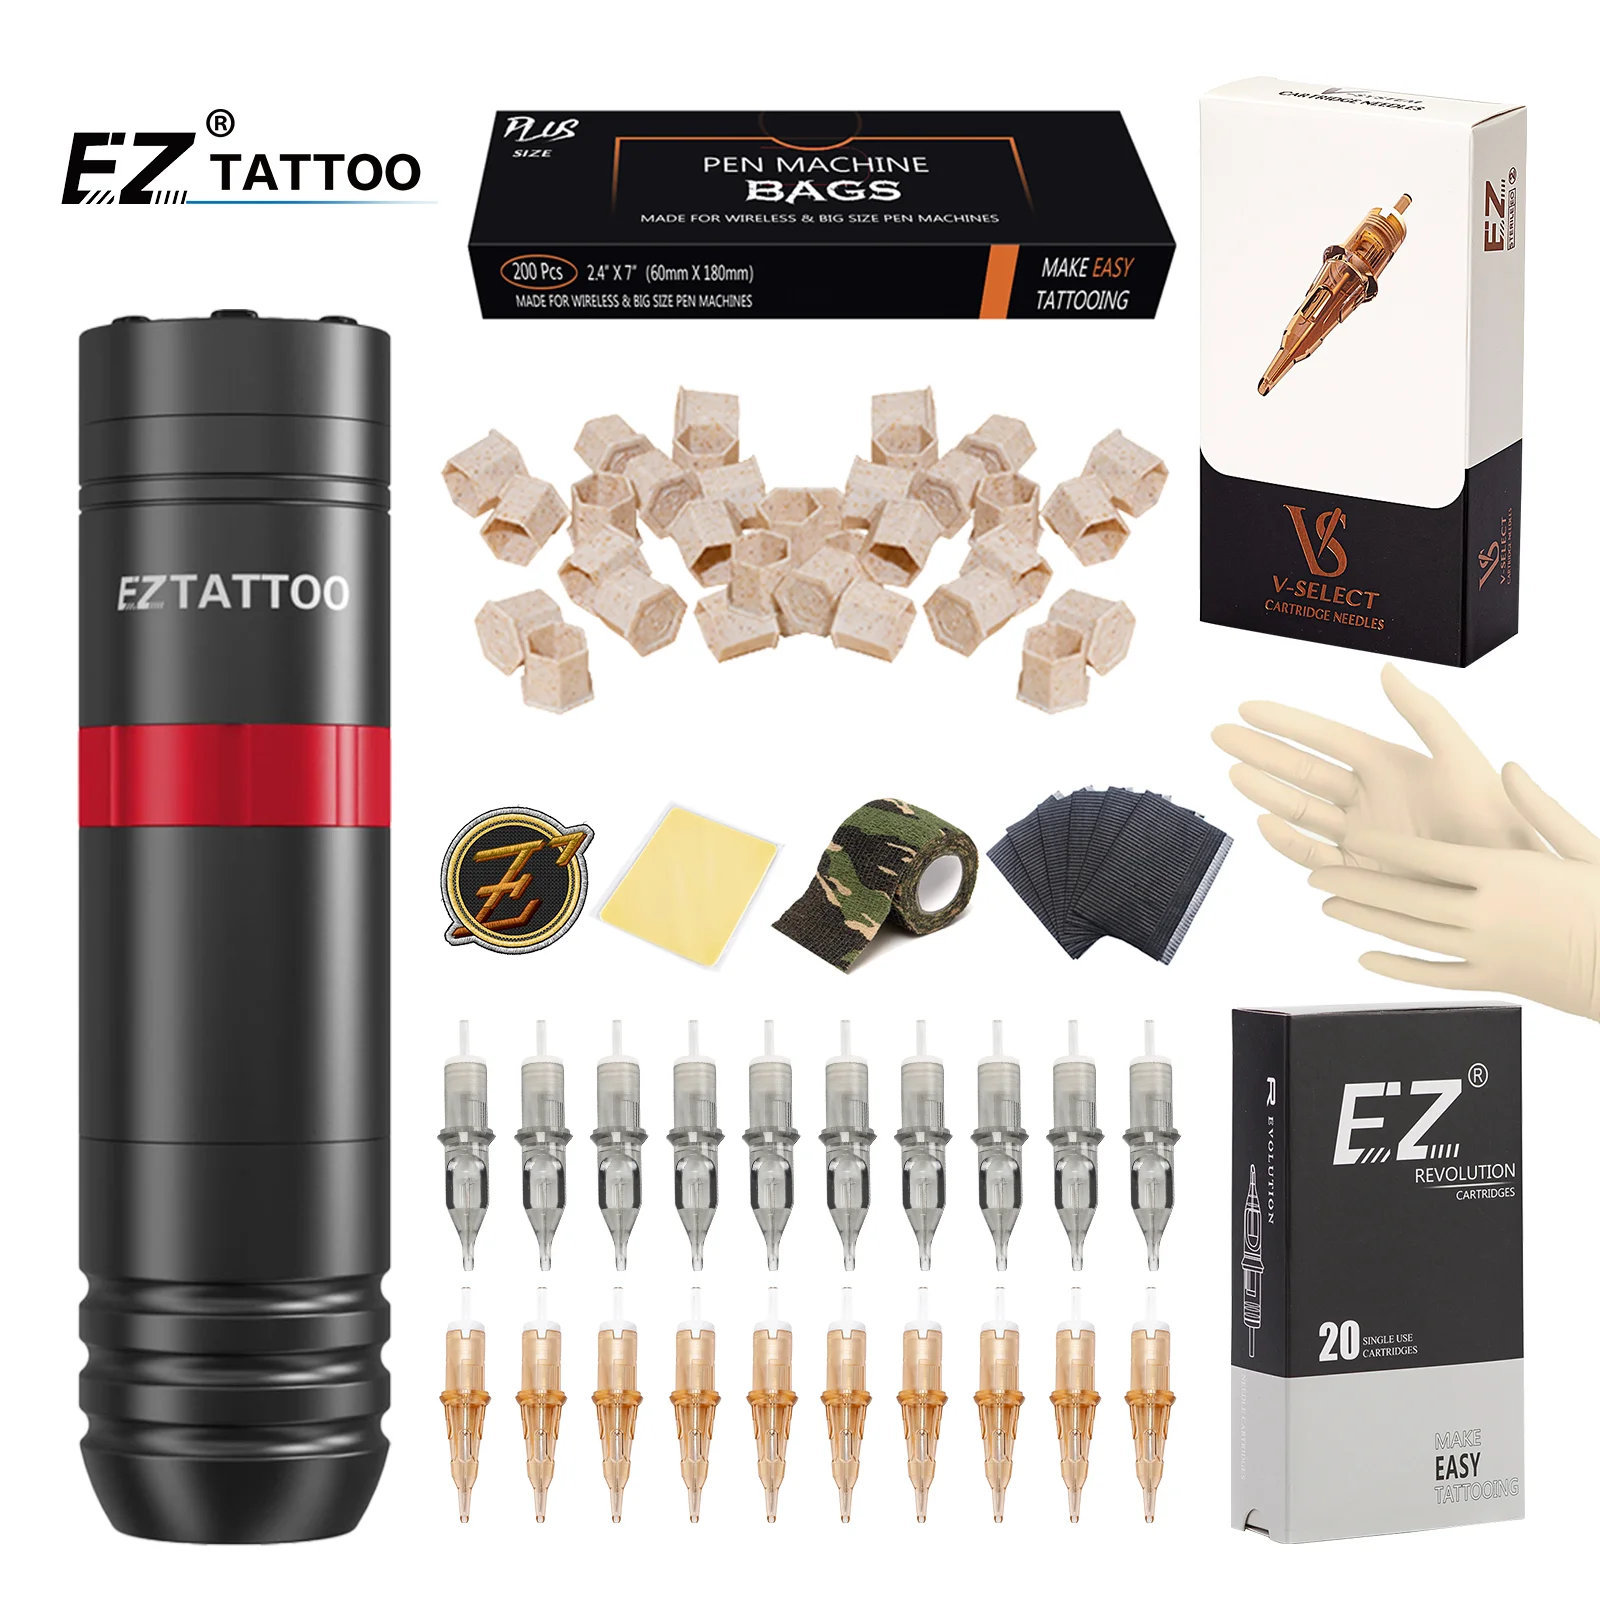 

EZ Tattoo Kits Caster Wireless Cartridge Tattoo Machine pen with 40pcs EZ Cartridge Tattoo Needles for Tattoo Permanent Makeup